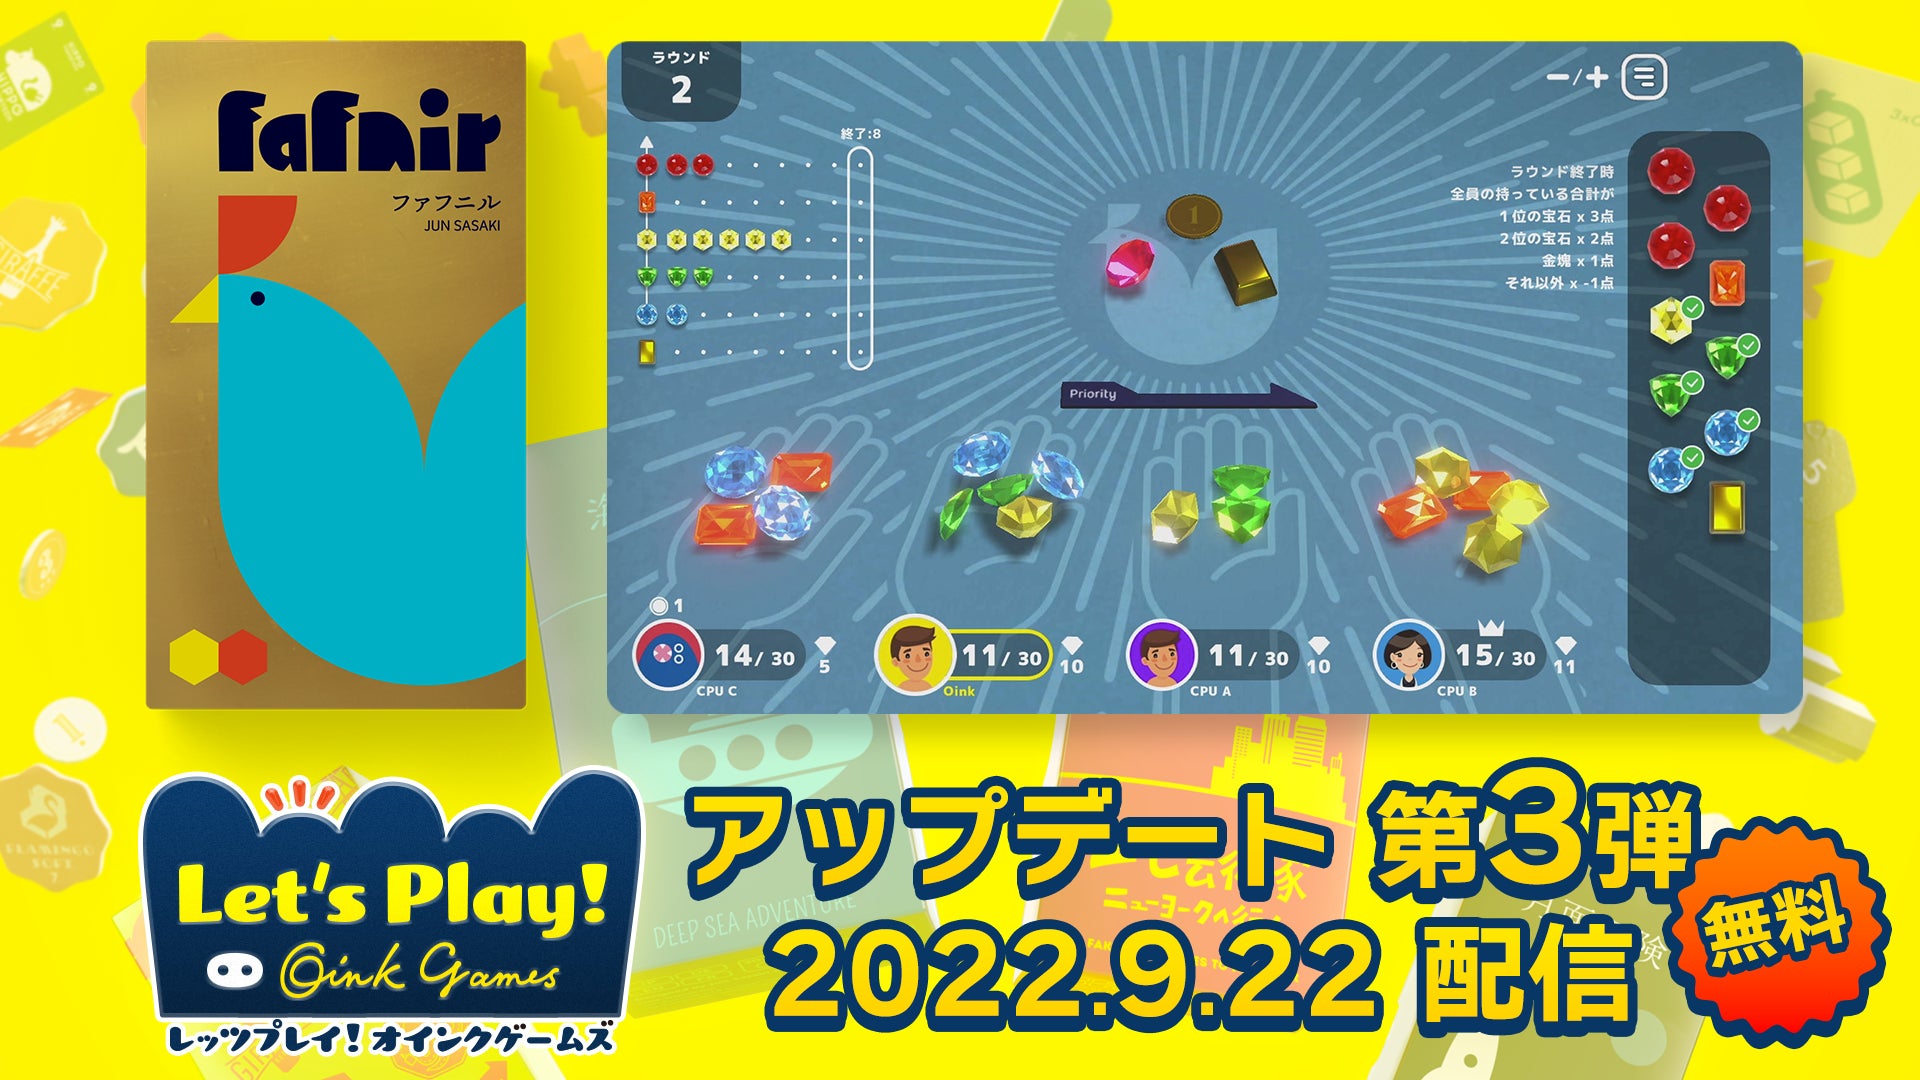 本日、無料アップデートで新ゲーム「ファフニル」追加！「レッツプレイ！オインクゲームズ」Nintendo Switch版/Steam版に。